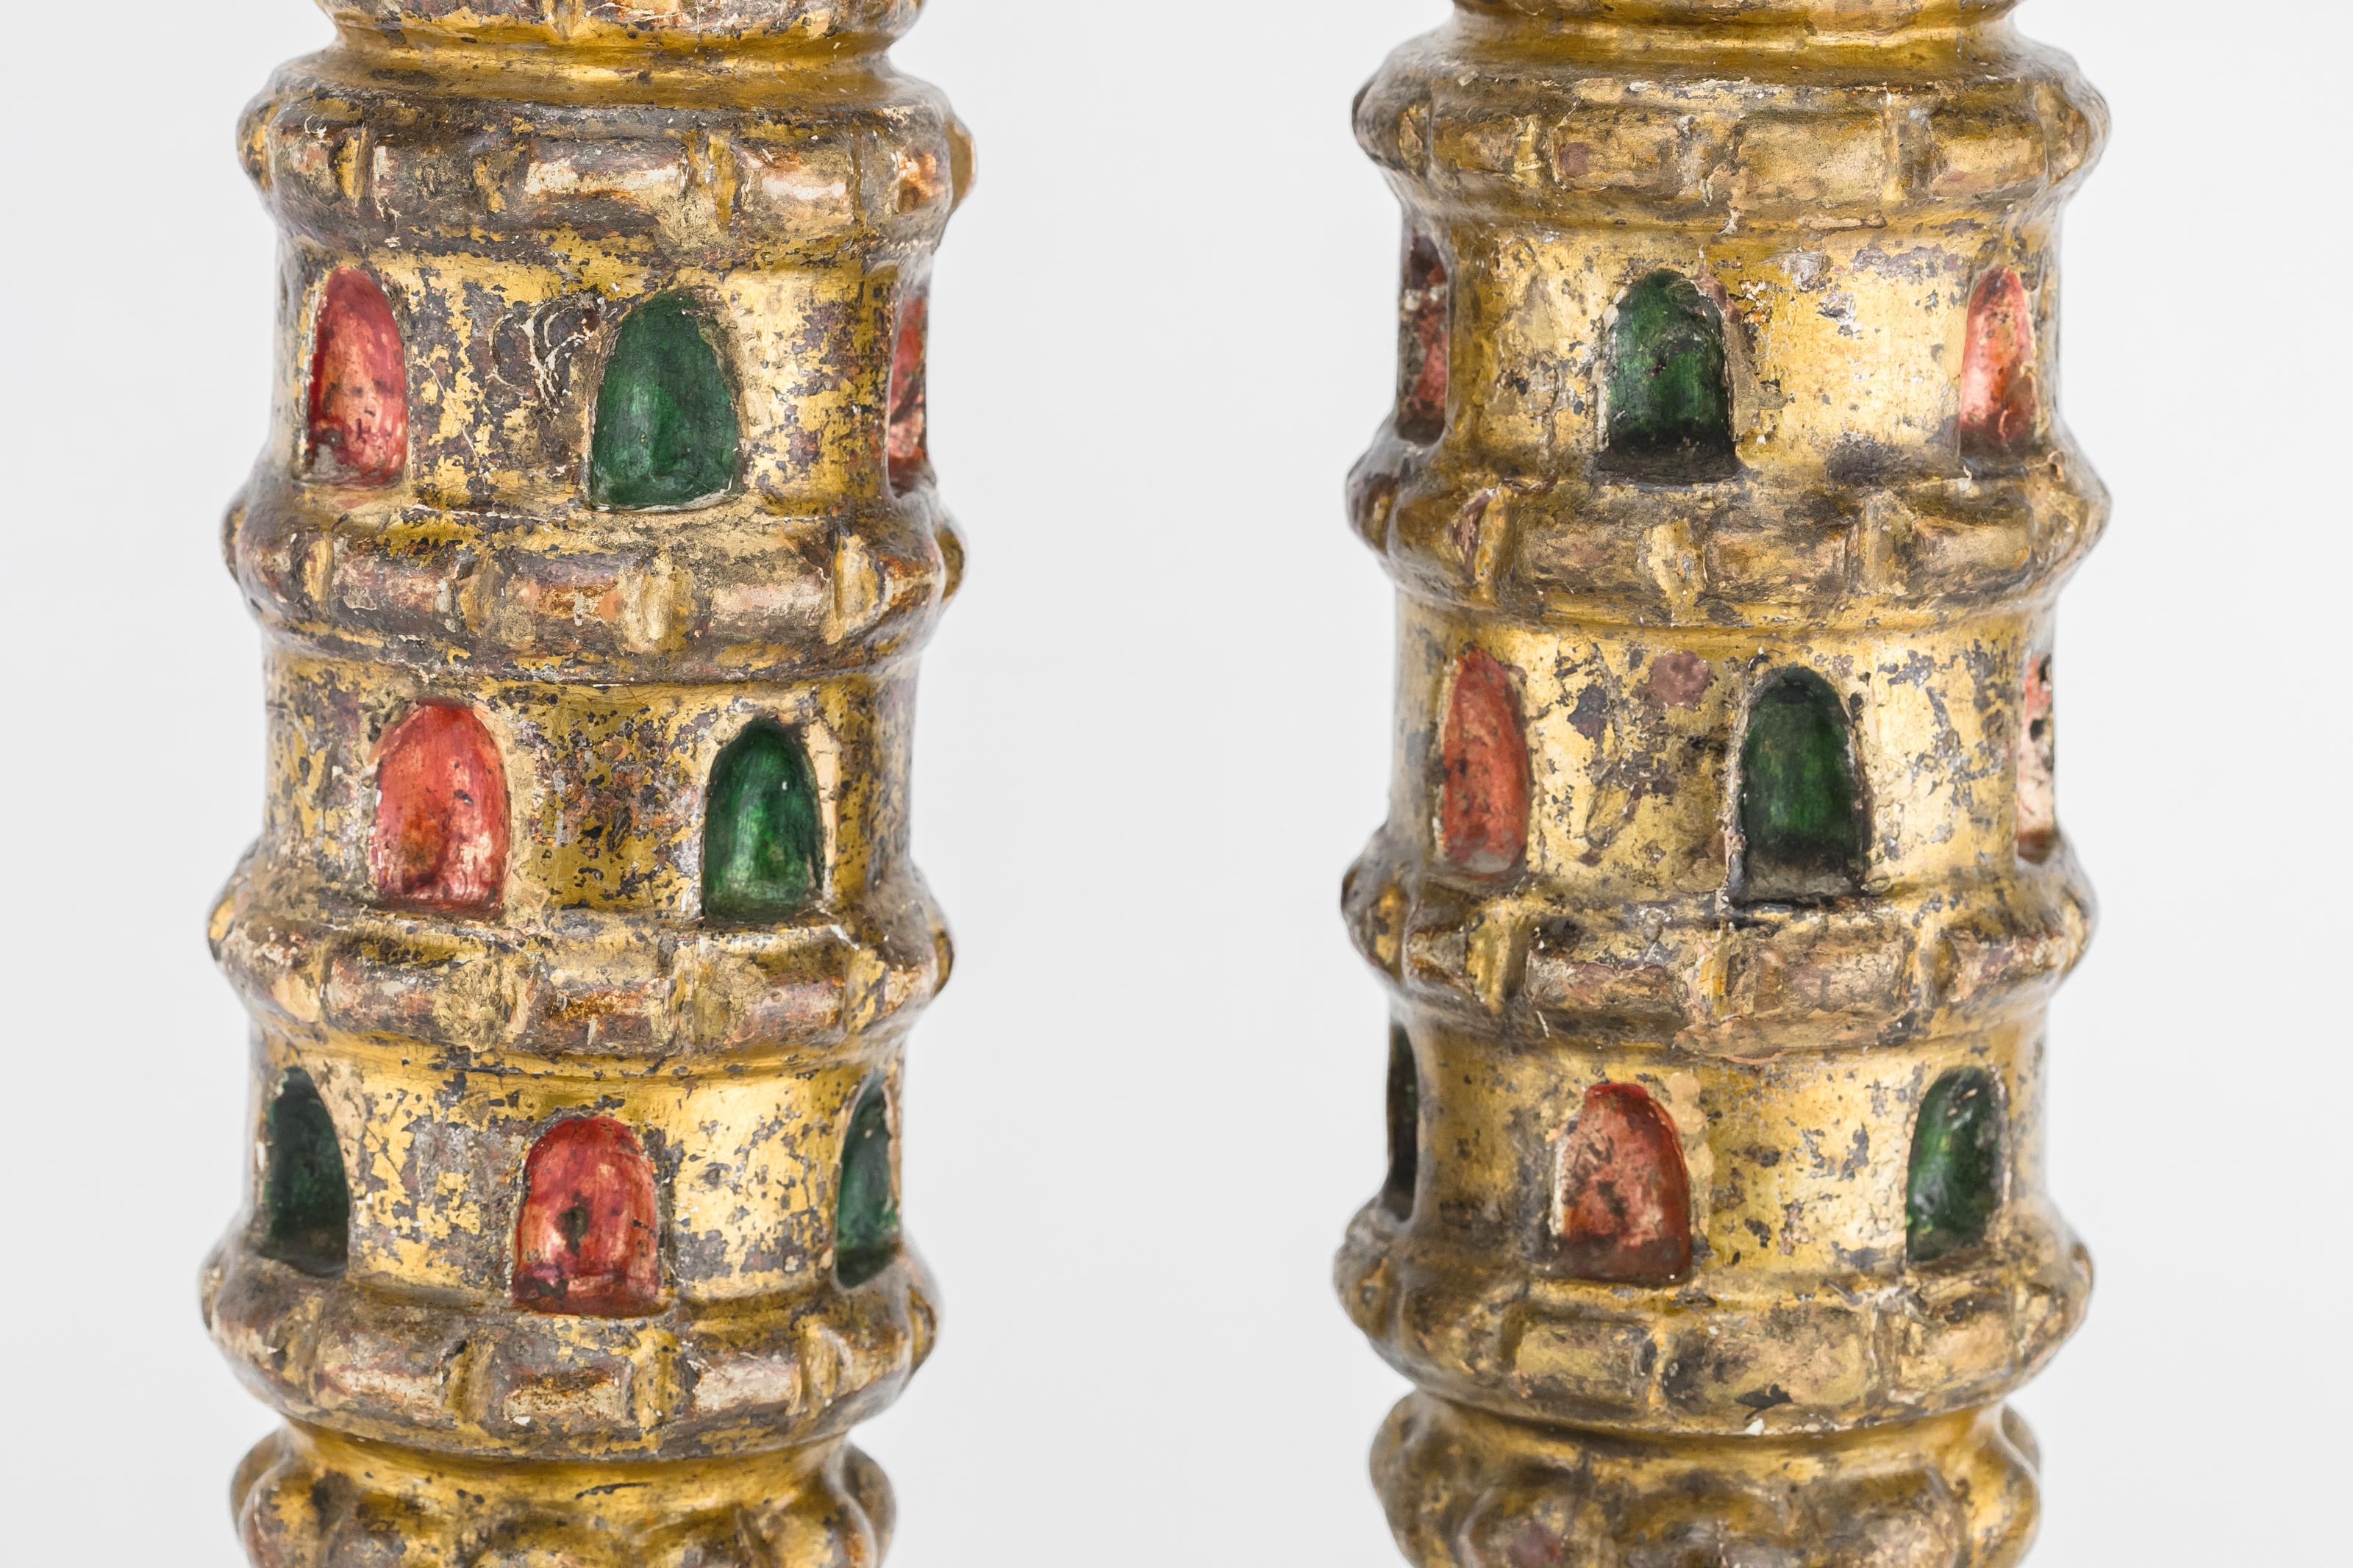 Paar hölzerne Tora-Finials, Libyen, 19. Jahrhundert.
Handgeschnitzt und mit roter, grüner und goldener Farbe verziert.
Schönes und seltenes Beispiel für hölzerne Tora-Ornamente.
Ein ähnliches Beispiel findet sich im Katalog des Hechal Shlomo